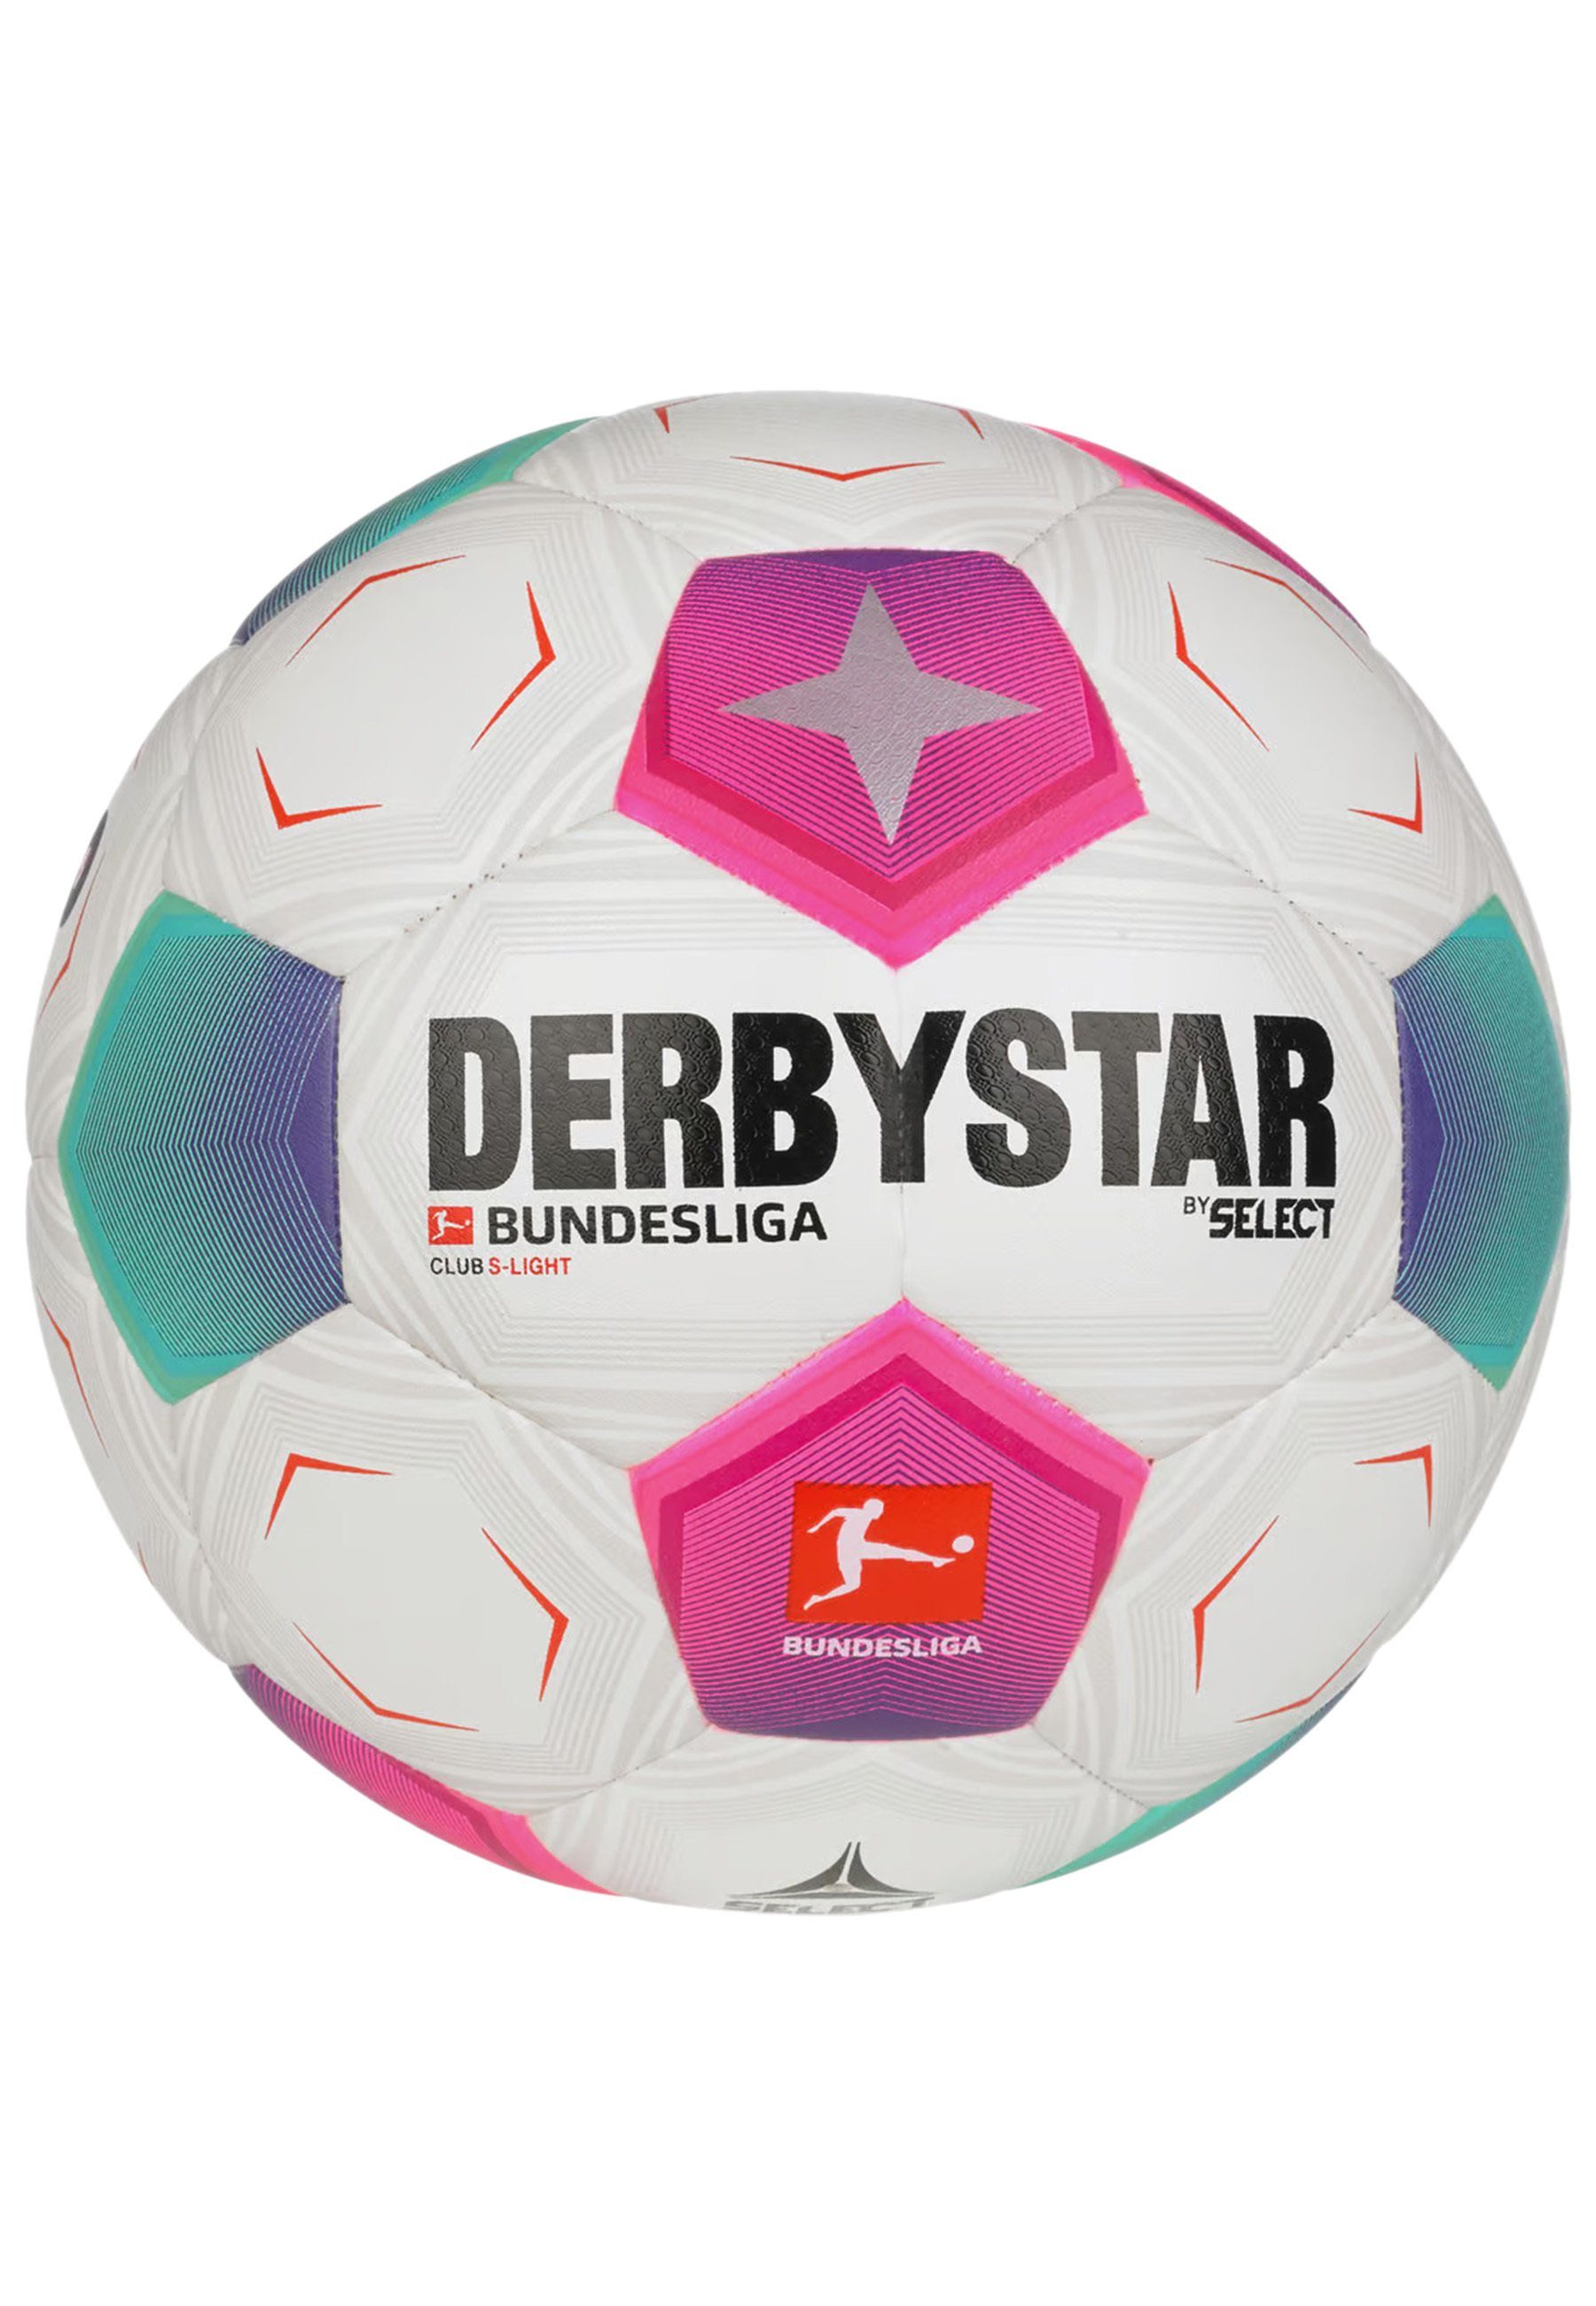 Club Derbystar Bundesliga S-Light Fußball